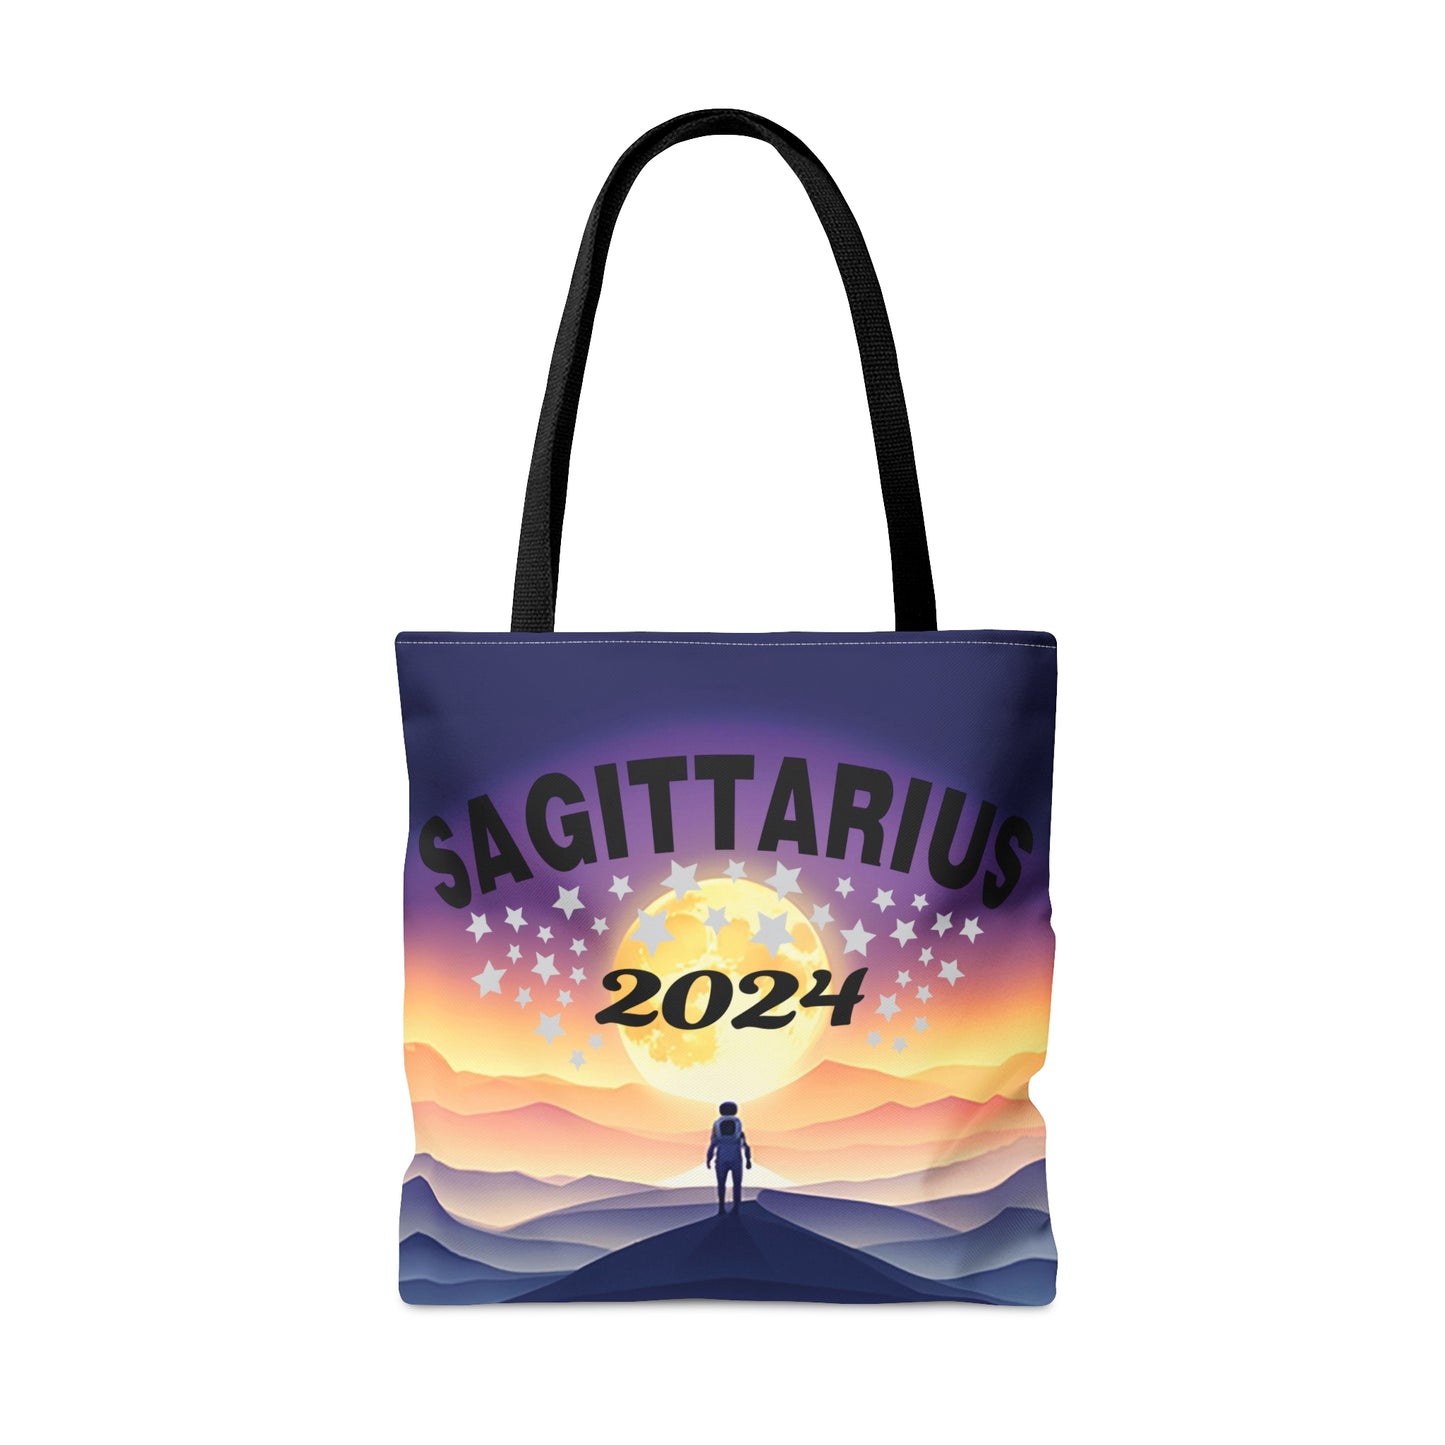 Sagittarius 2024 Tote Bag